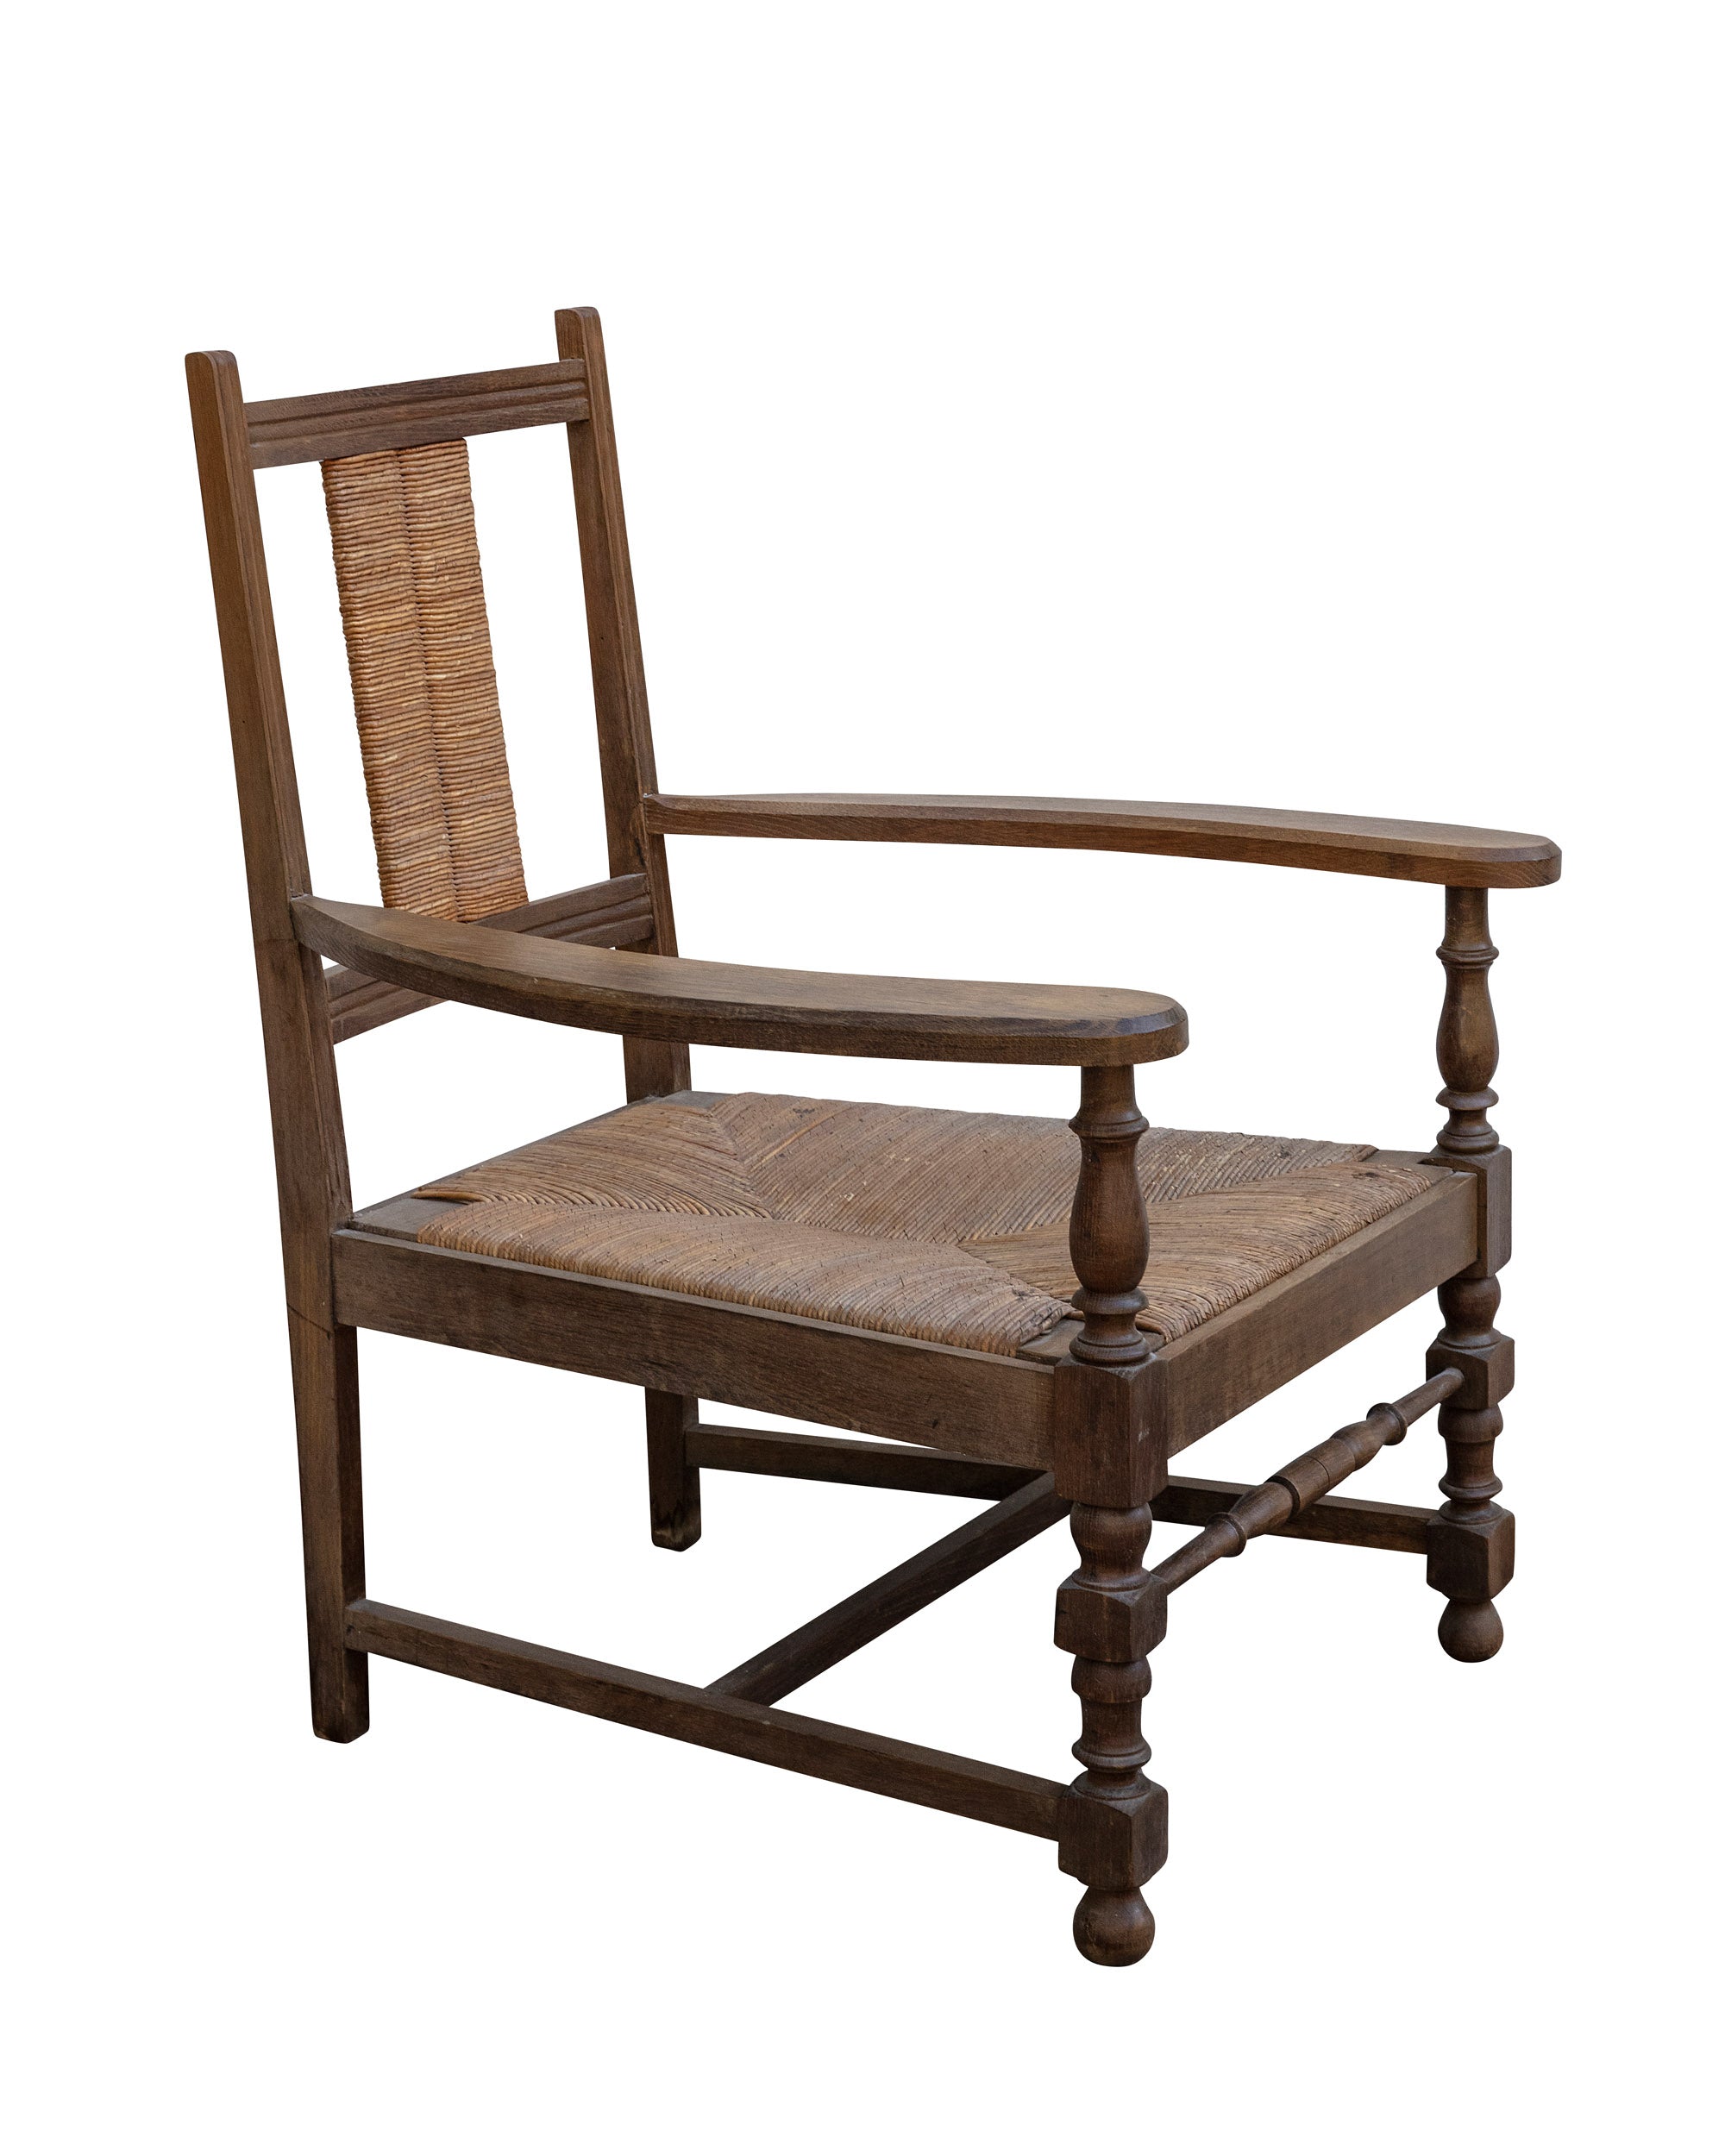 Butaca de madera con asiento y respaldo confeccionados con paja. Años 50.